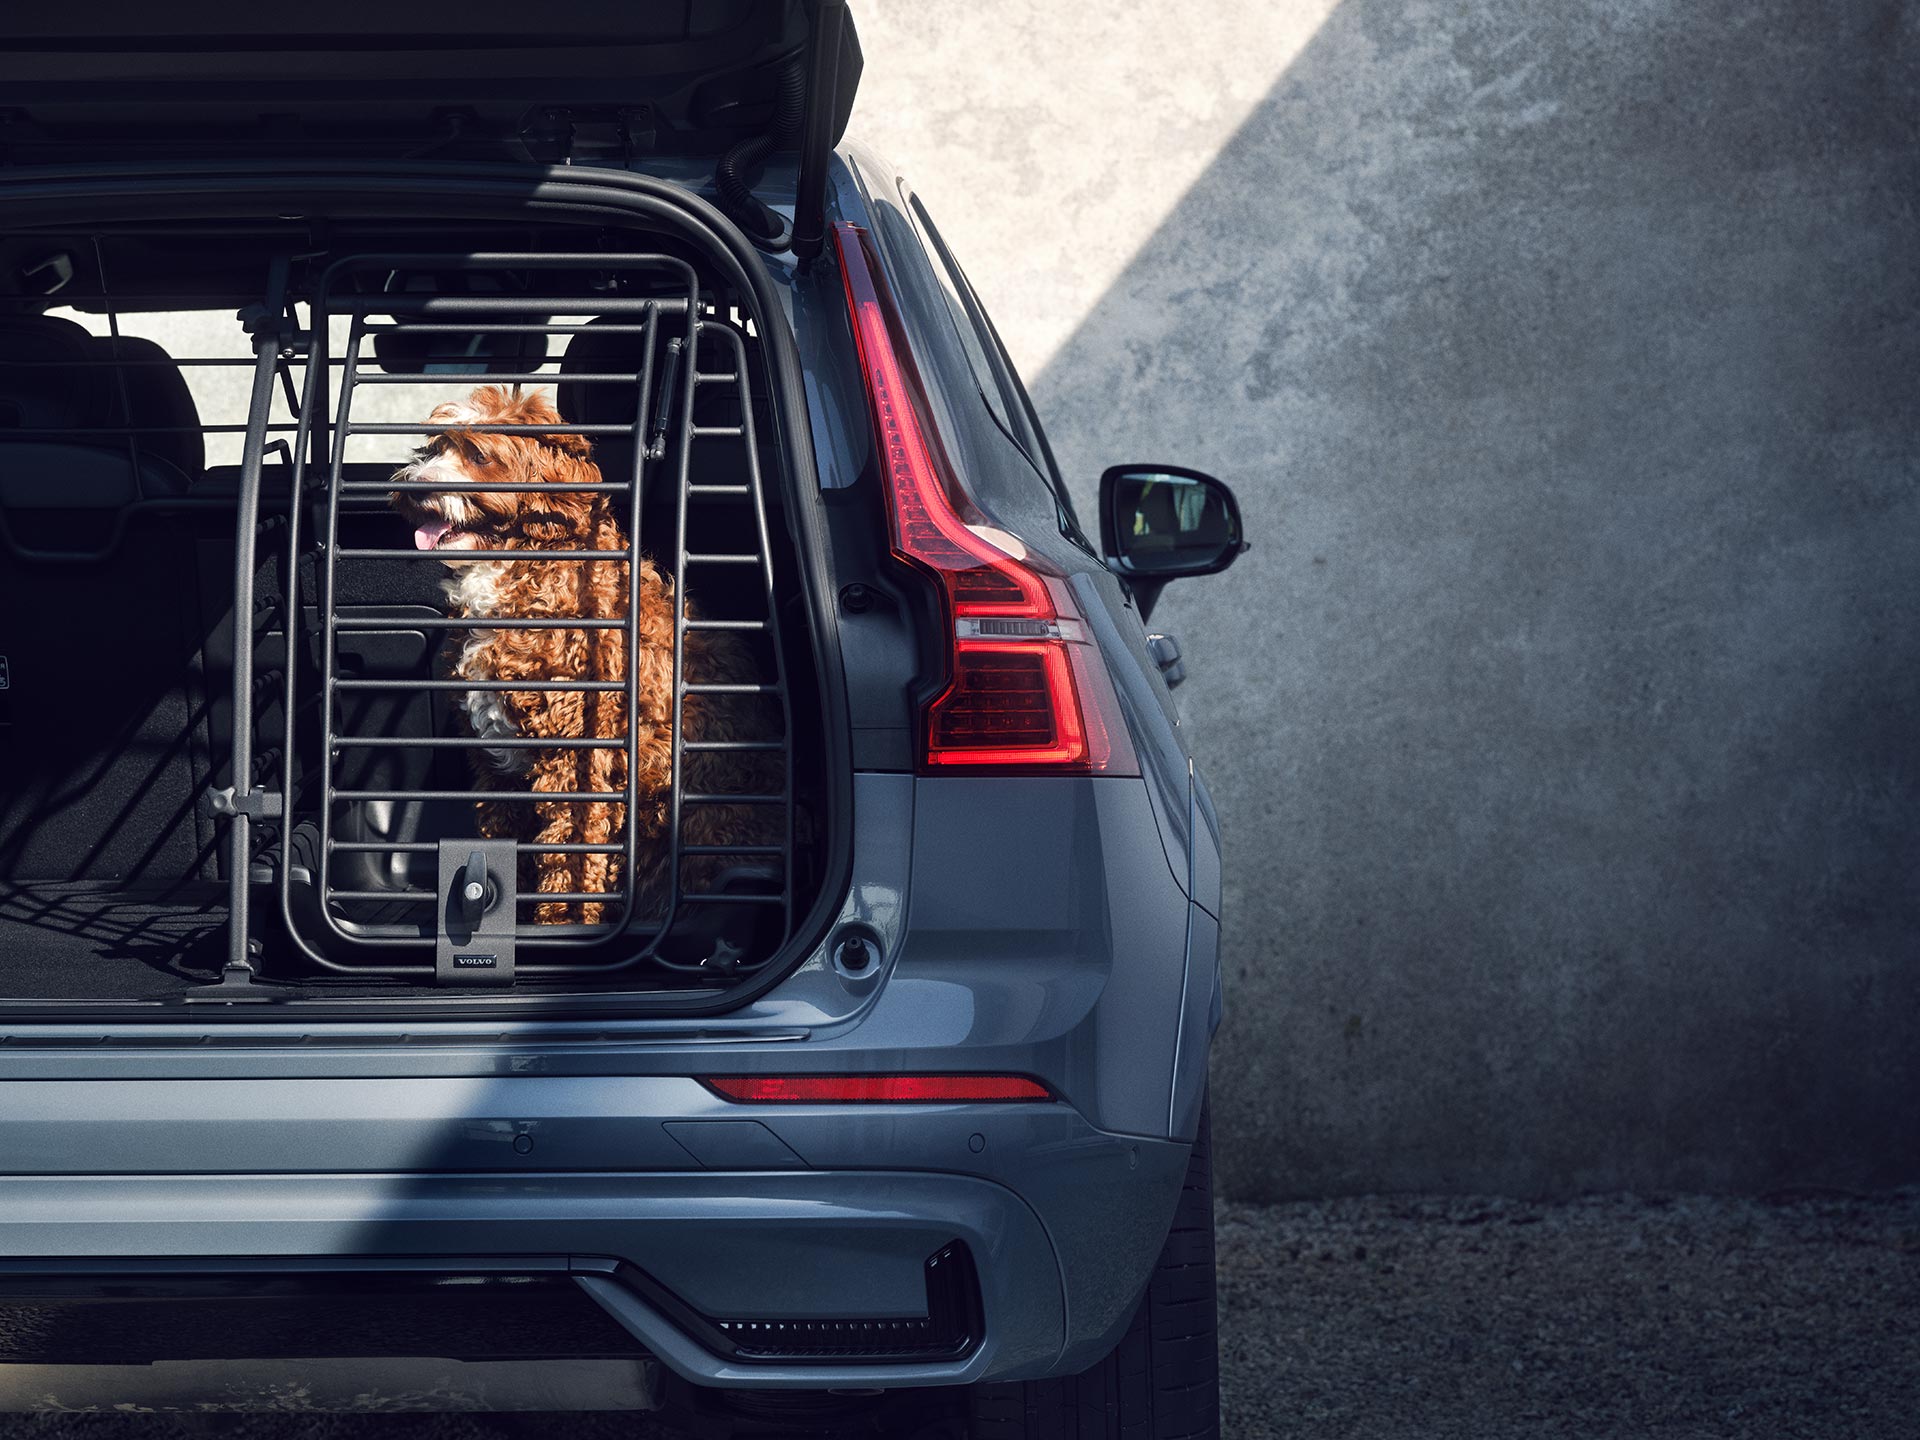 Një qen është ulur në një kafaz të sigurt, një aksesor i dizajnuar veçanërisht për sigurinë dhe komoditetin e kafshëve shtëpiake që udhëtojnë në makinat Volvo.